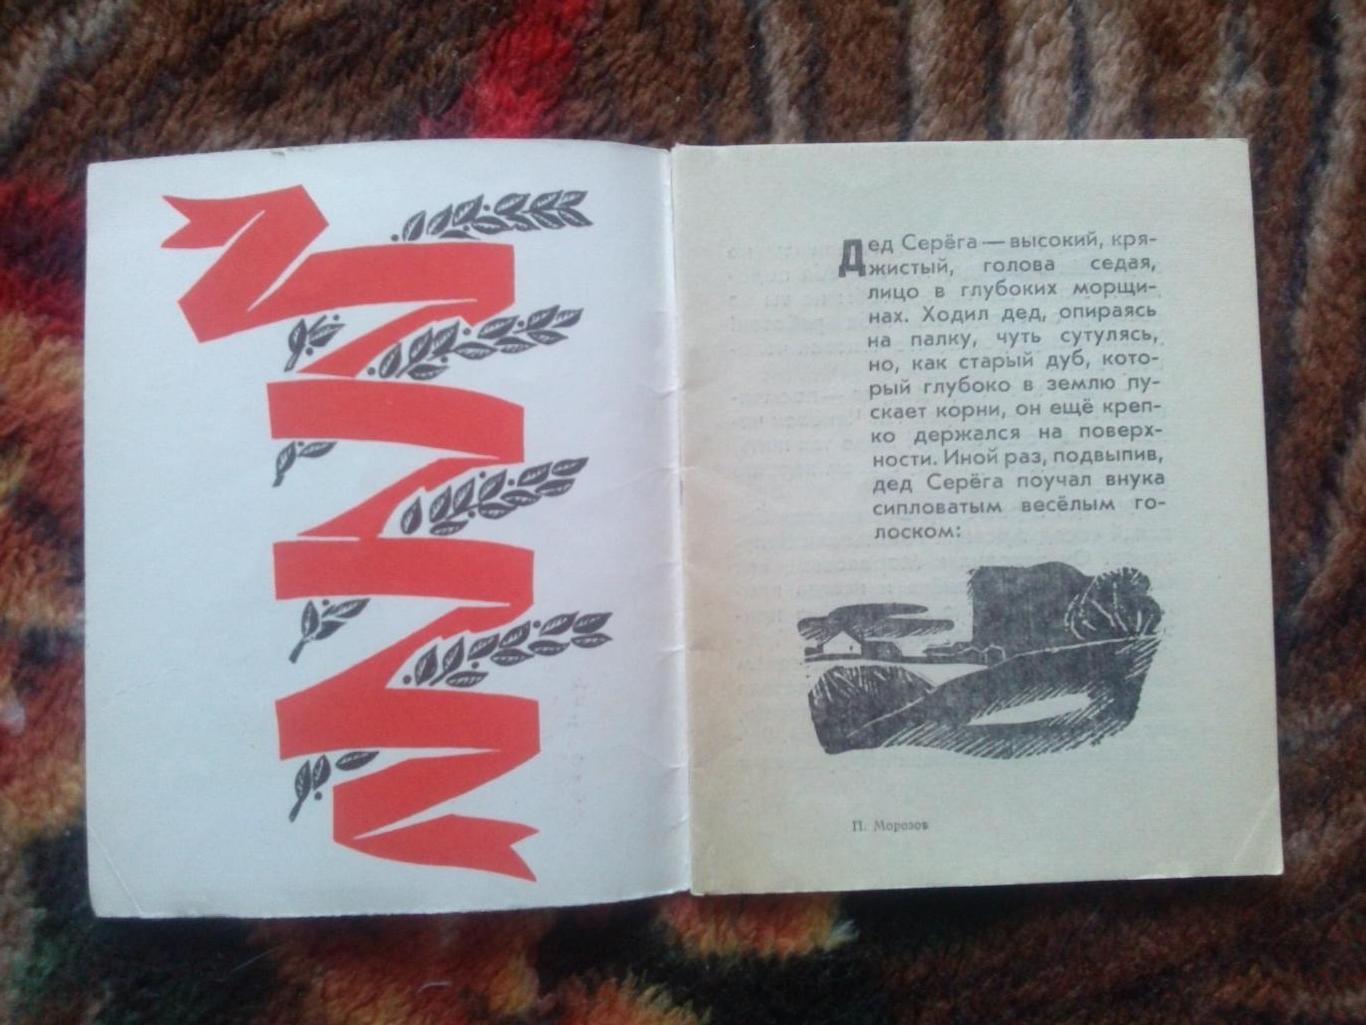 Пионеры-герои (Плакат + брошюра) 1967 г. Павлик Морозов (Пионер , агитация) 5